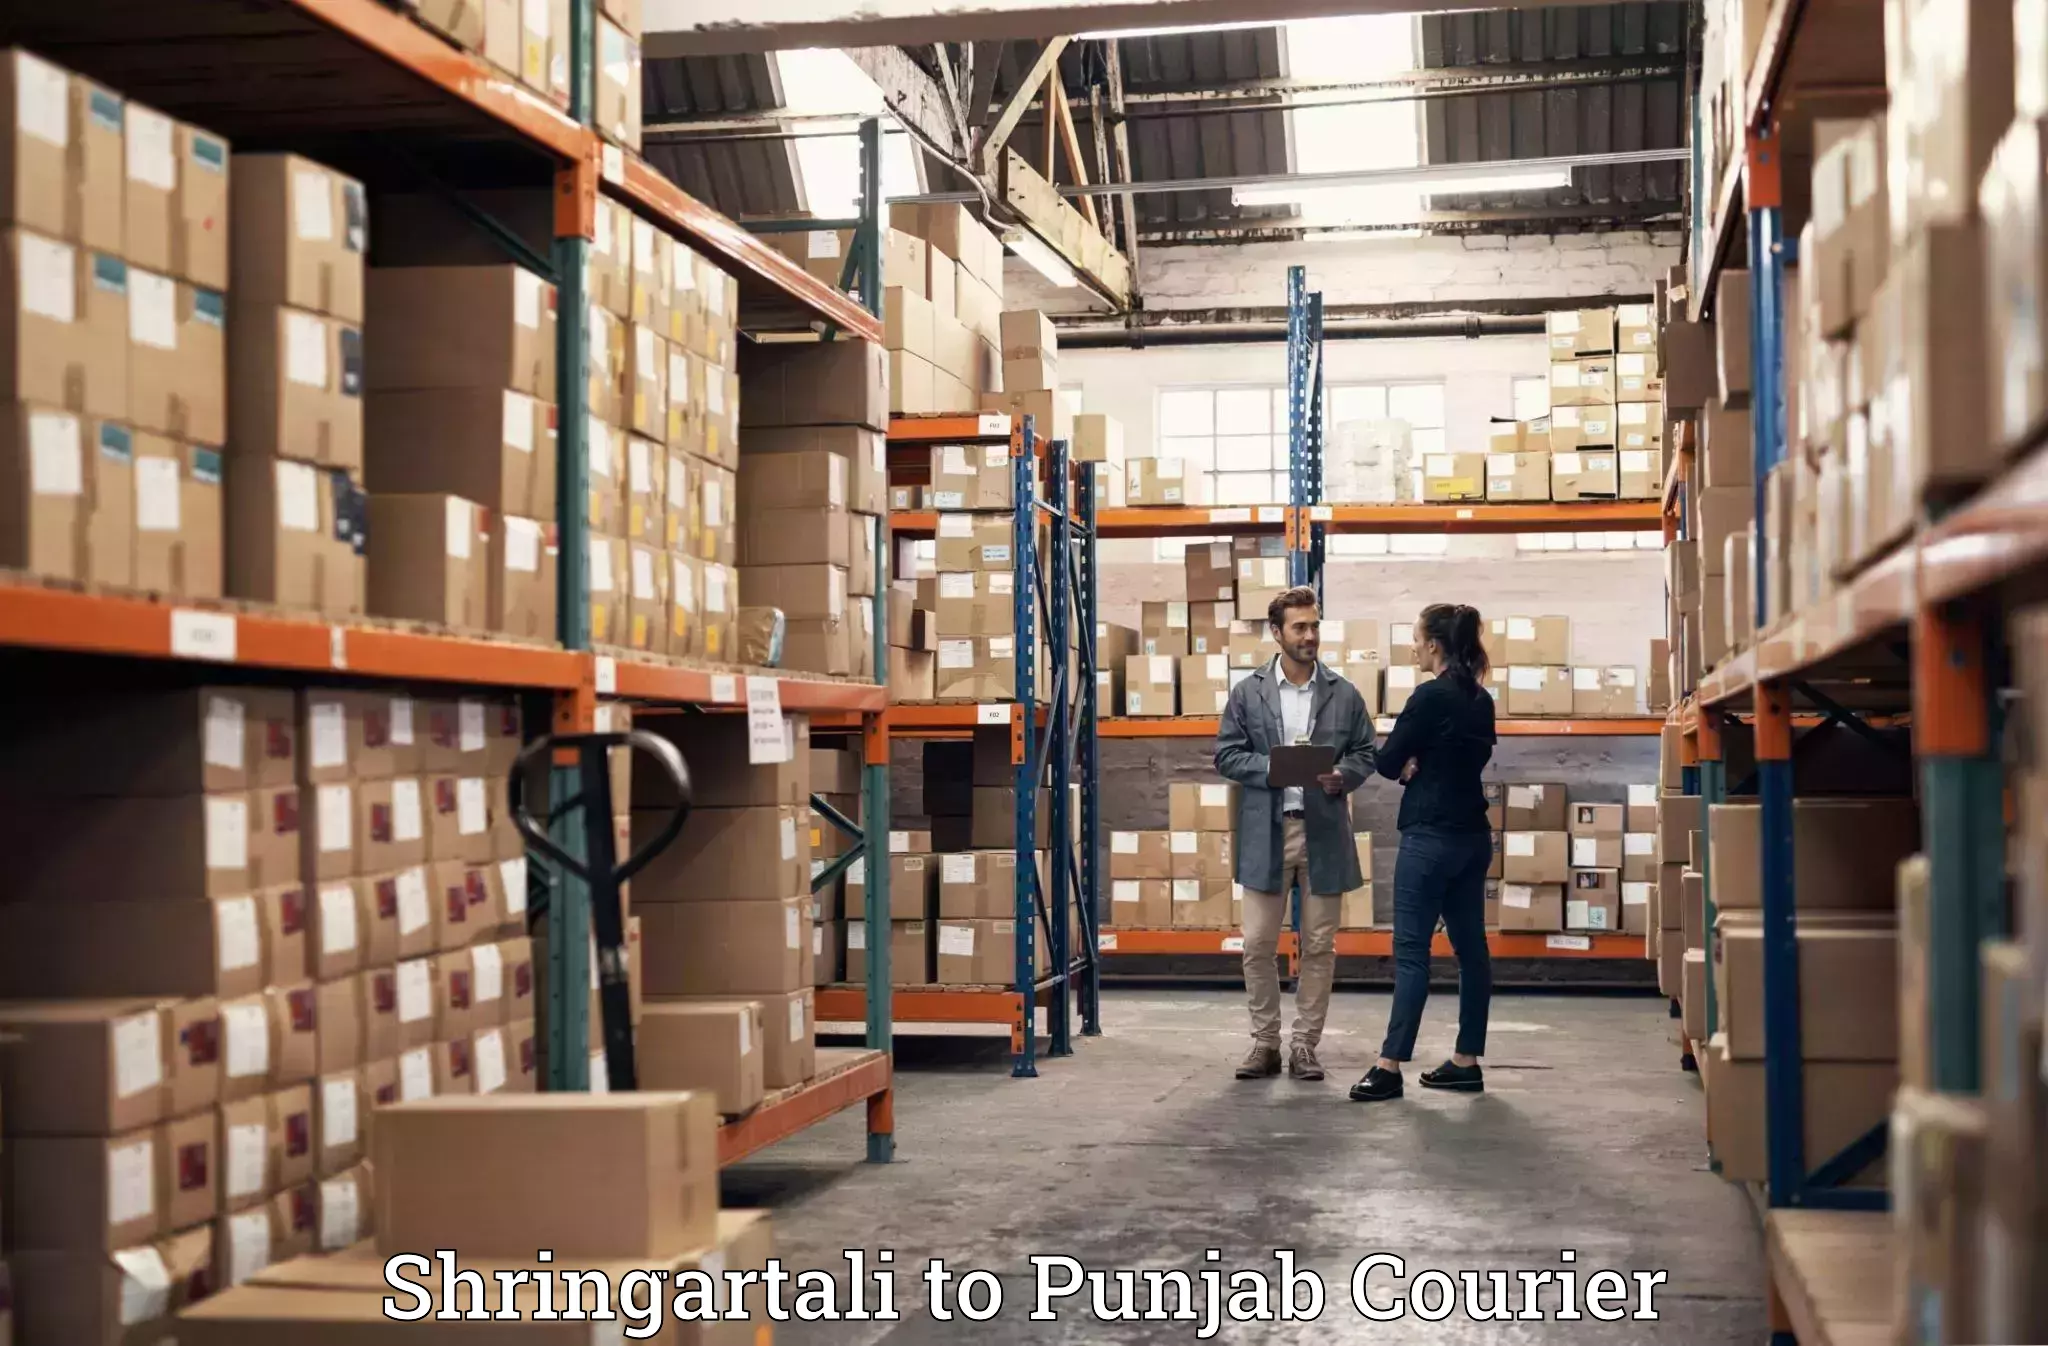 Luggage shipment strategy Shringartali to Punjab